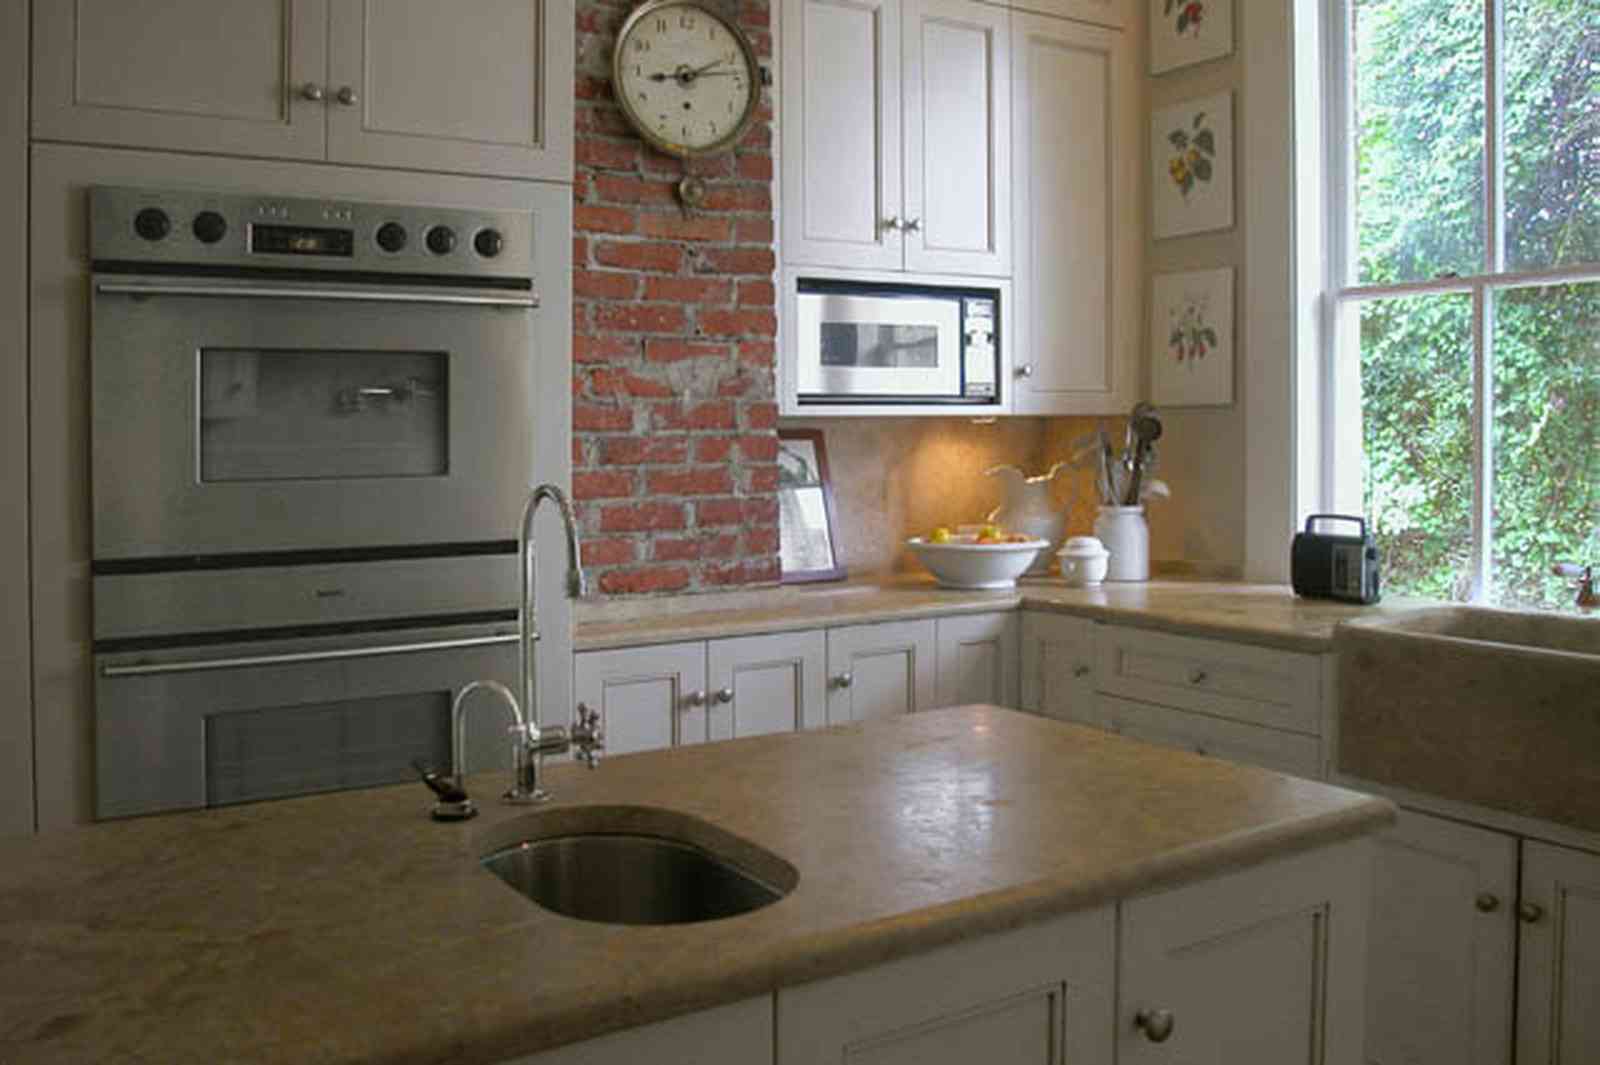 North-Hill:-116-DeSoto-St_02j.jpg:  kitchen, brick wall, stainless steel oven, kitchen sink